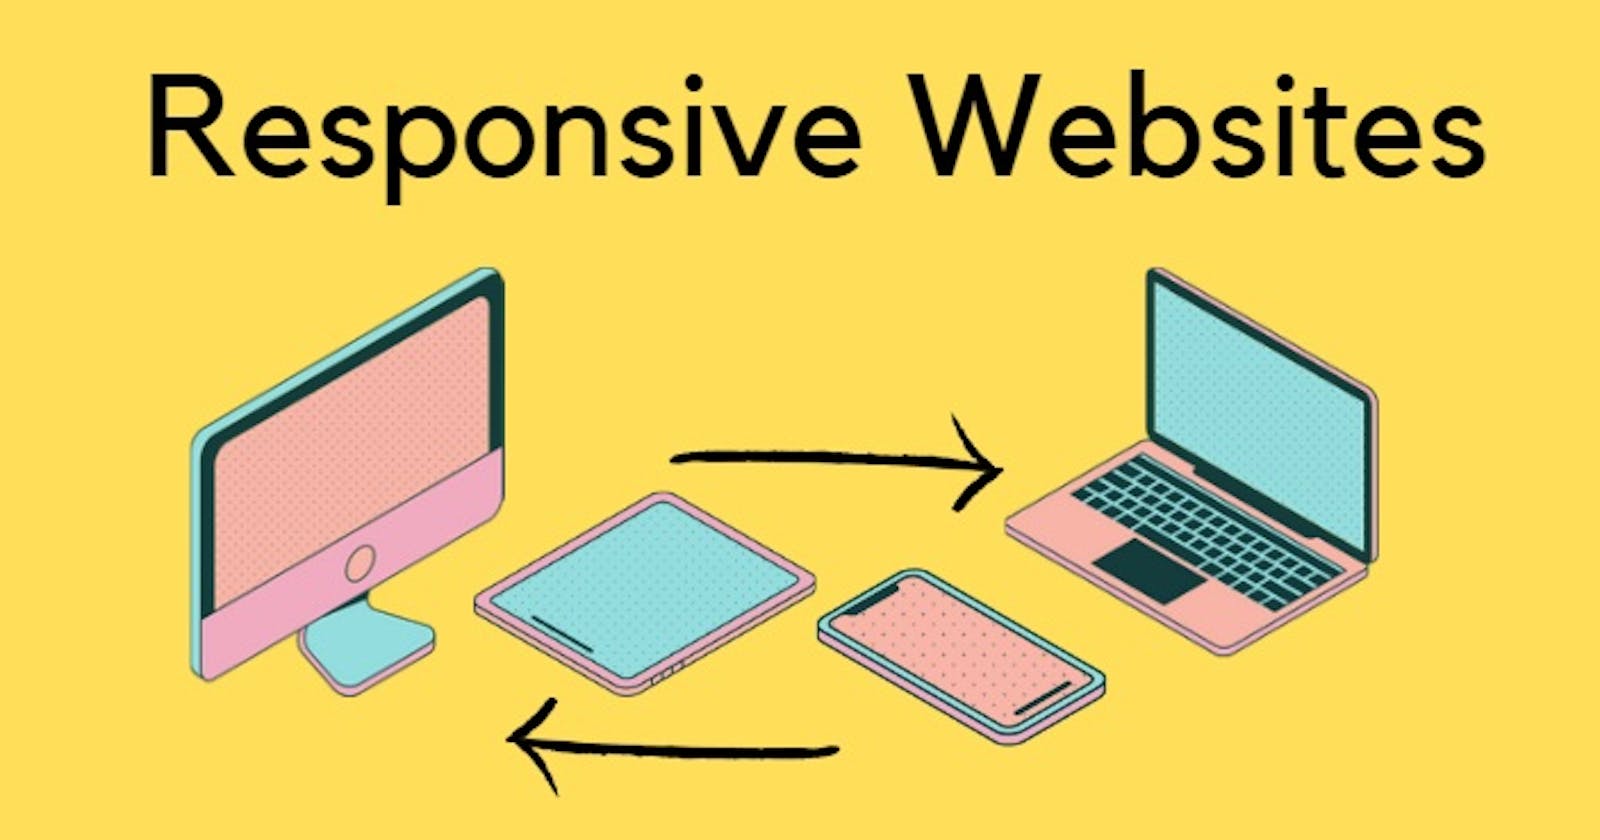 Building responsive websites